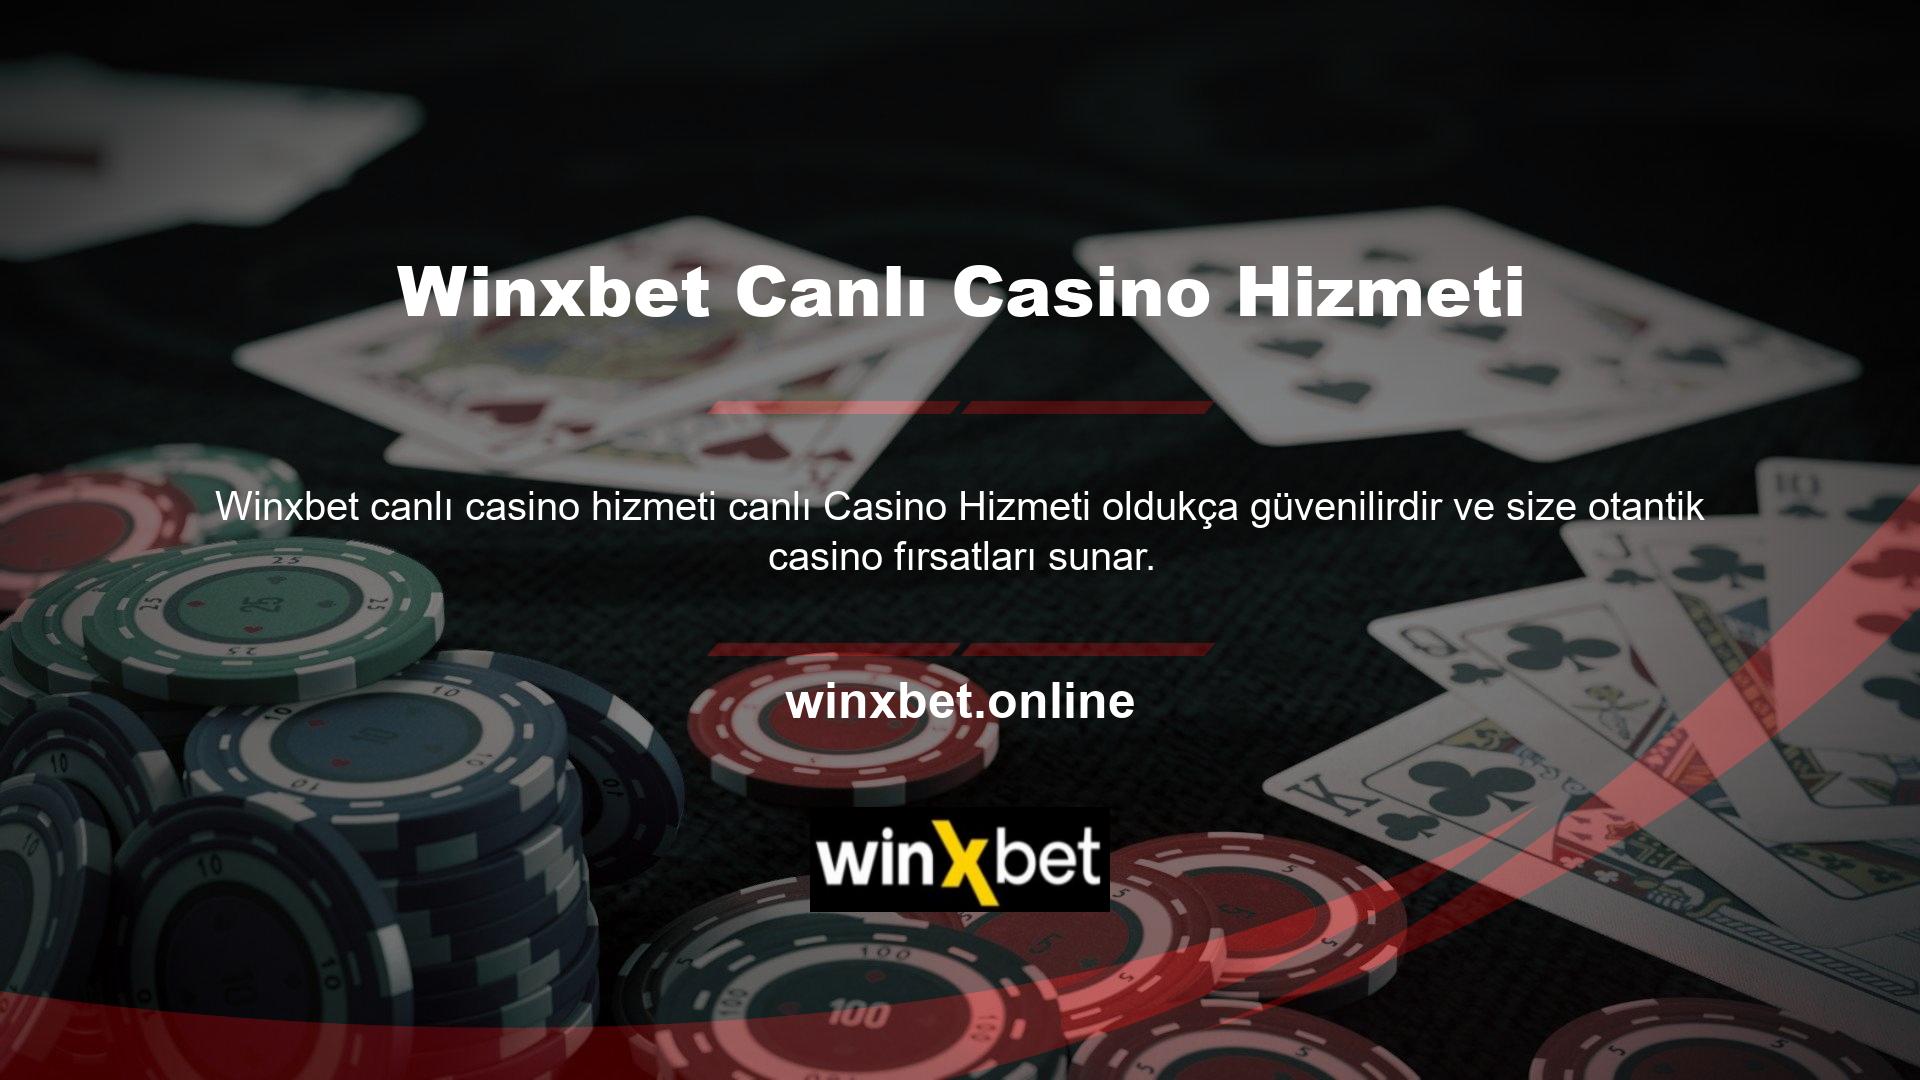 Winxbet Canlı Casino Hizmeti Mükemmel bir bağlantı platformu, canlı spor ve bahislerin yanı sıra Avrupa ve ülkemdeki yayınları da sunmaktadır